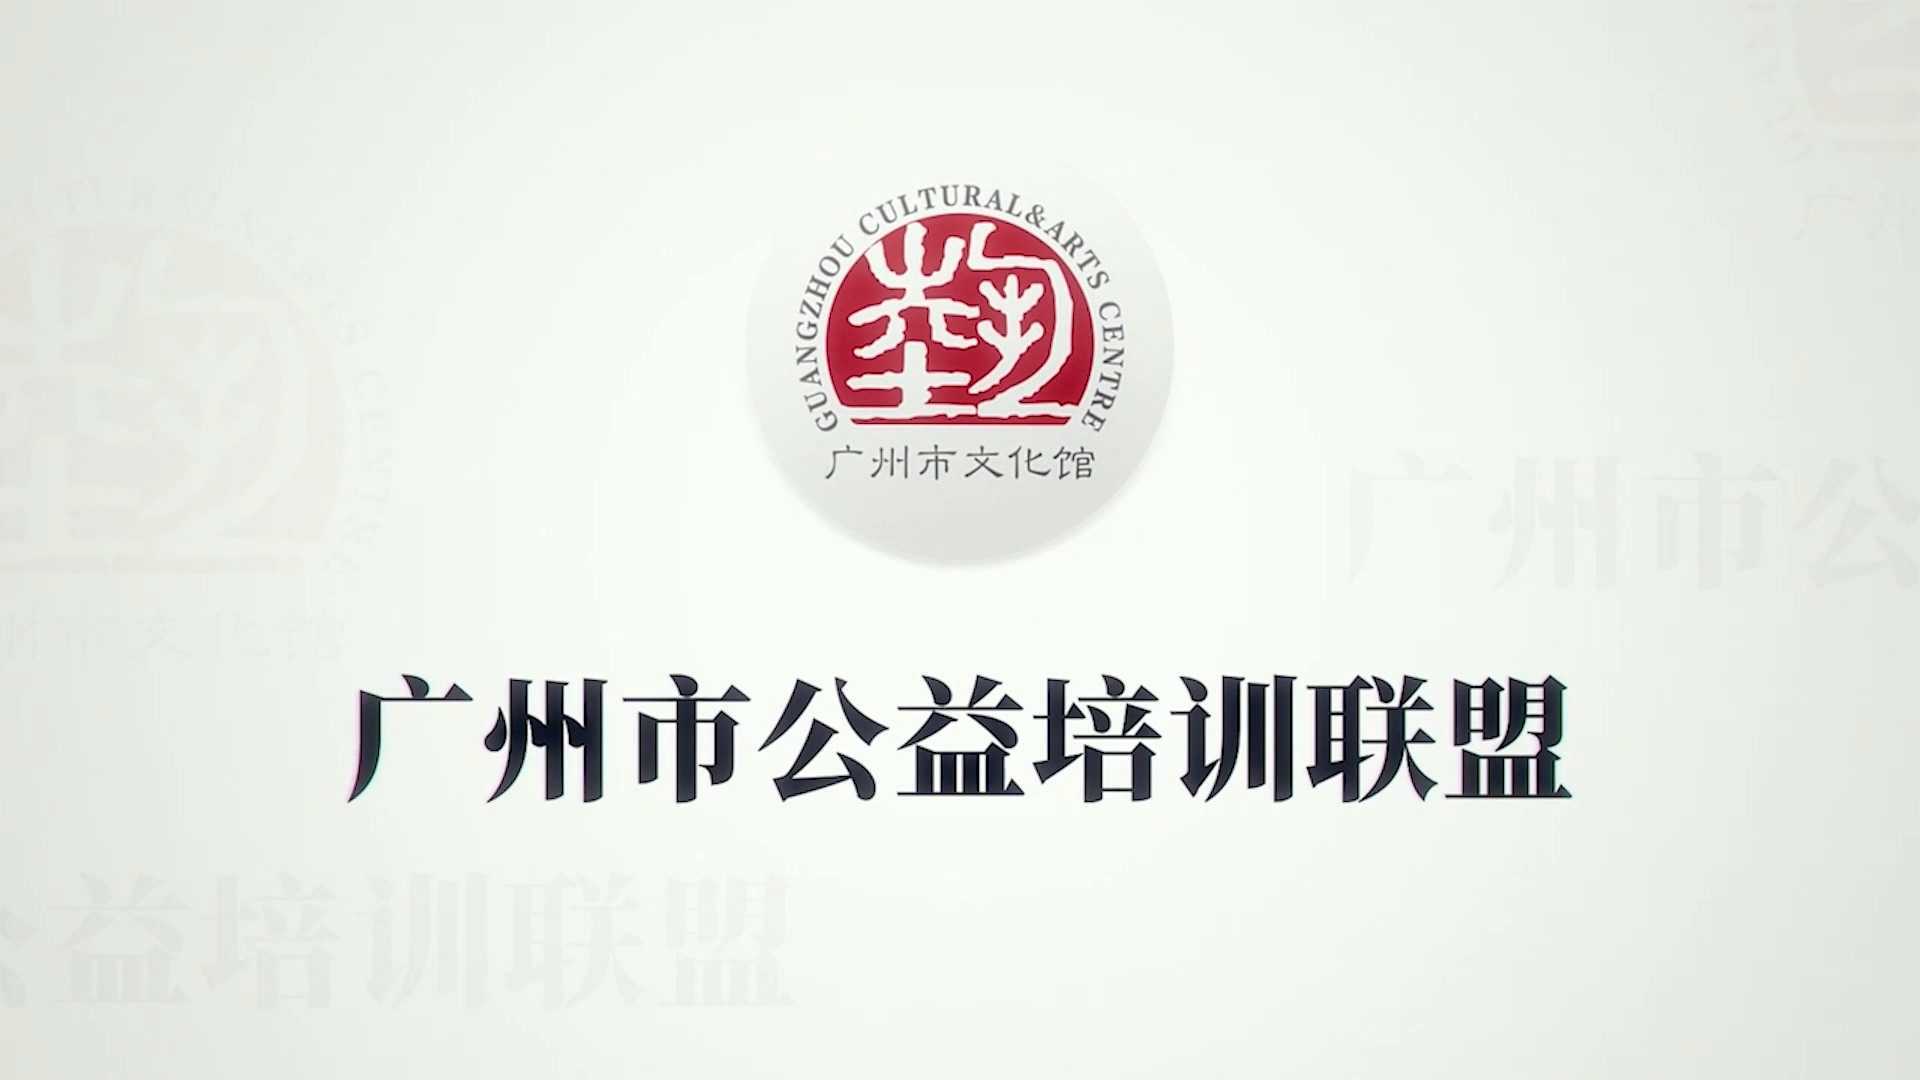 广州市公益培训联盟宣传视频